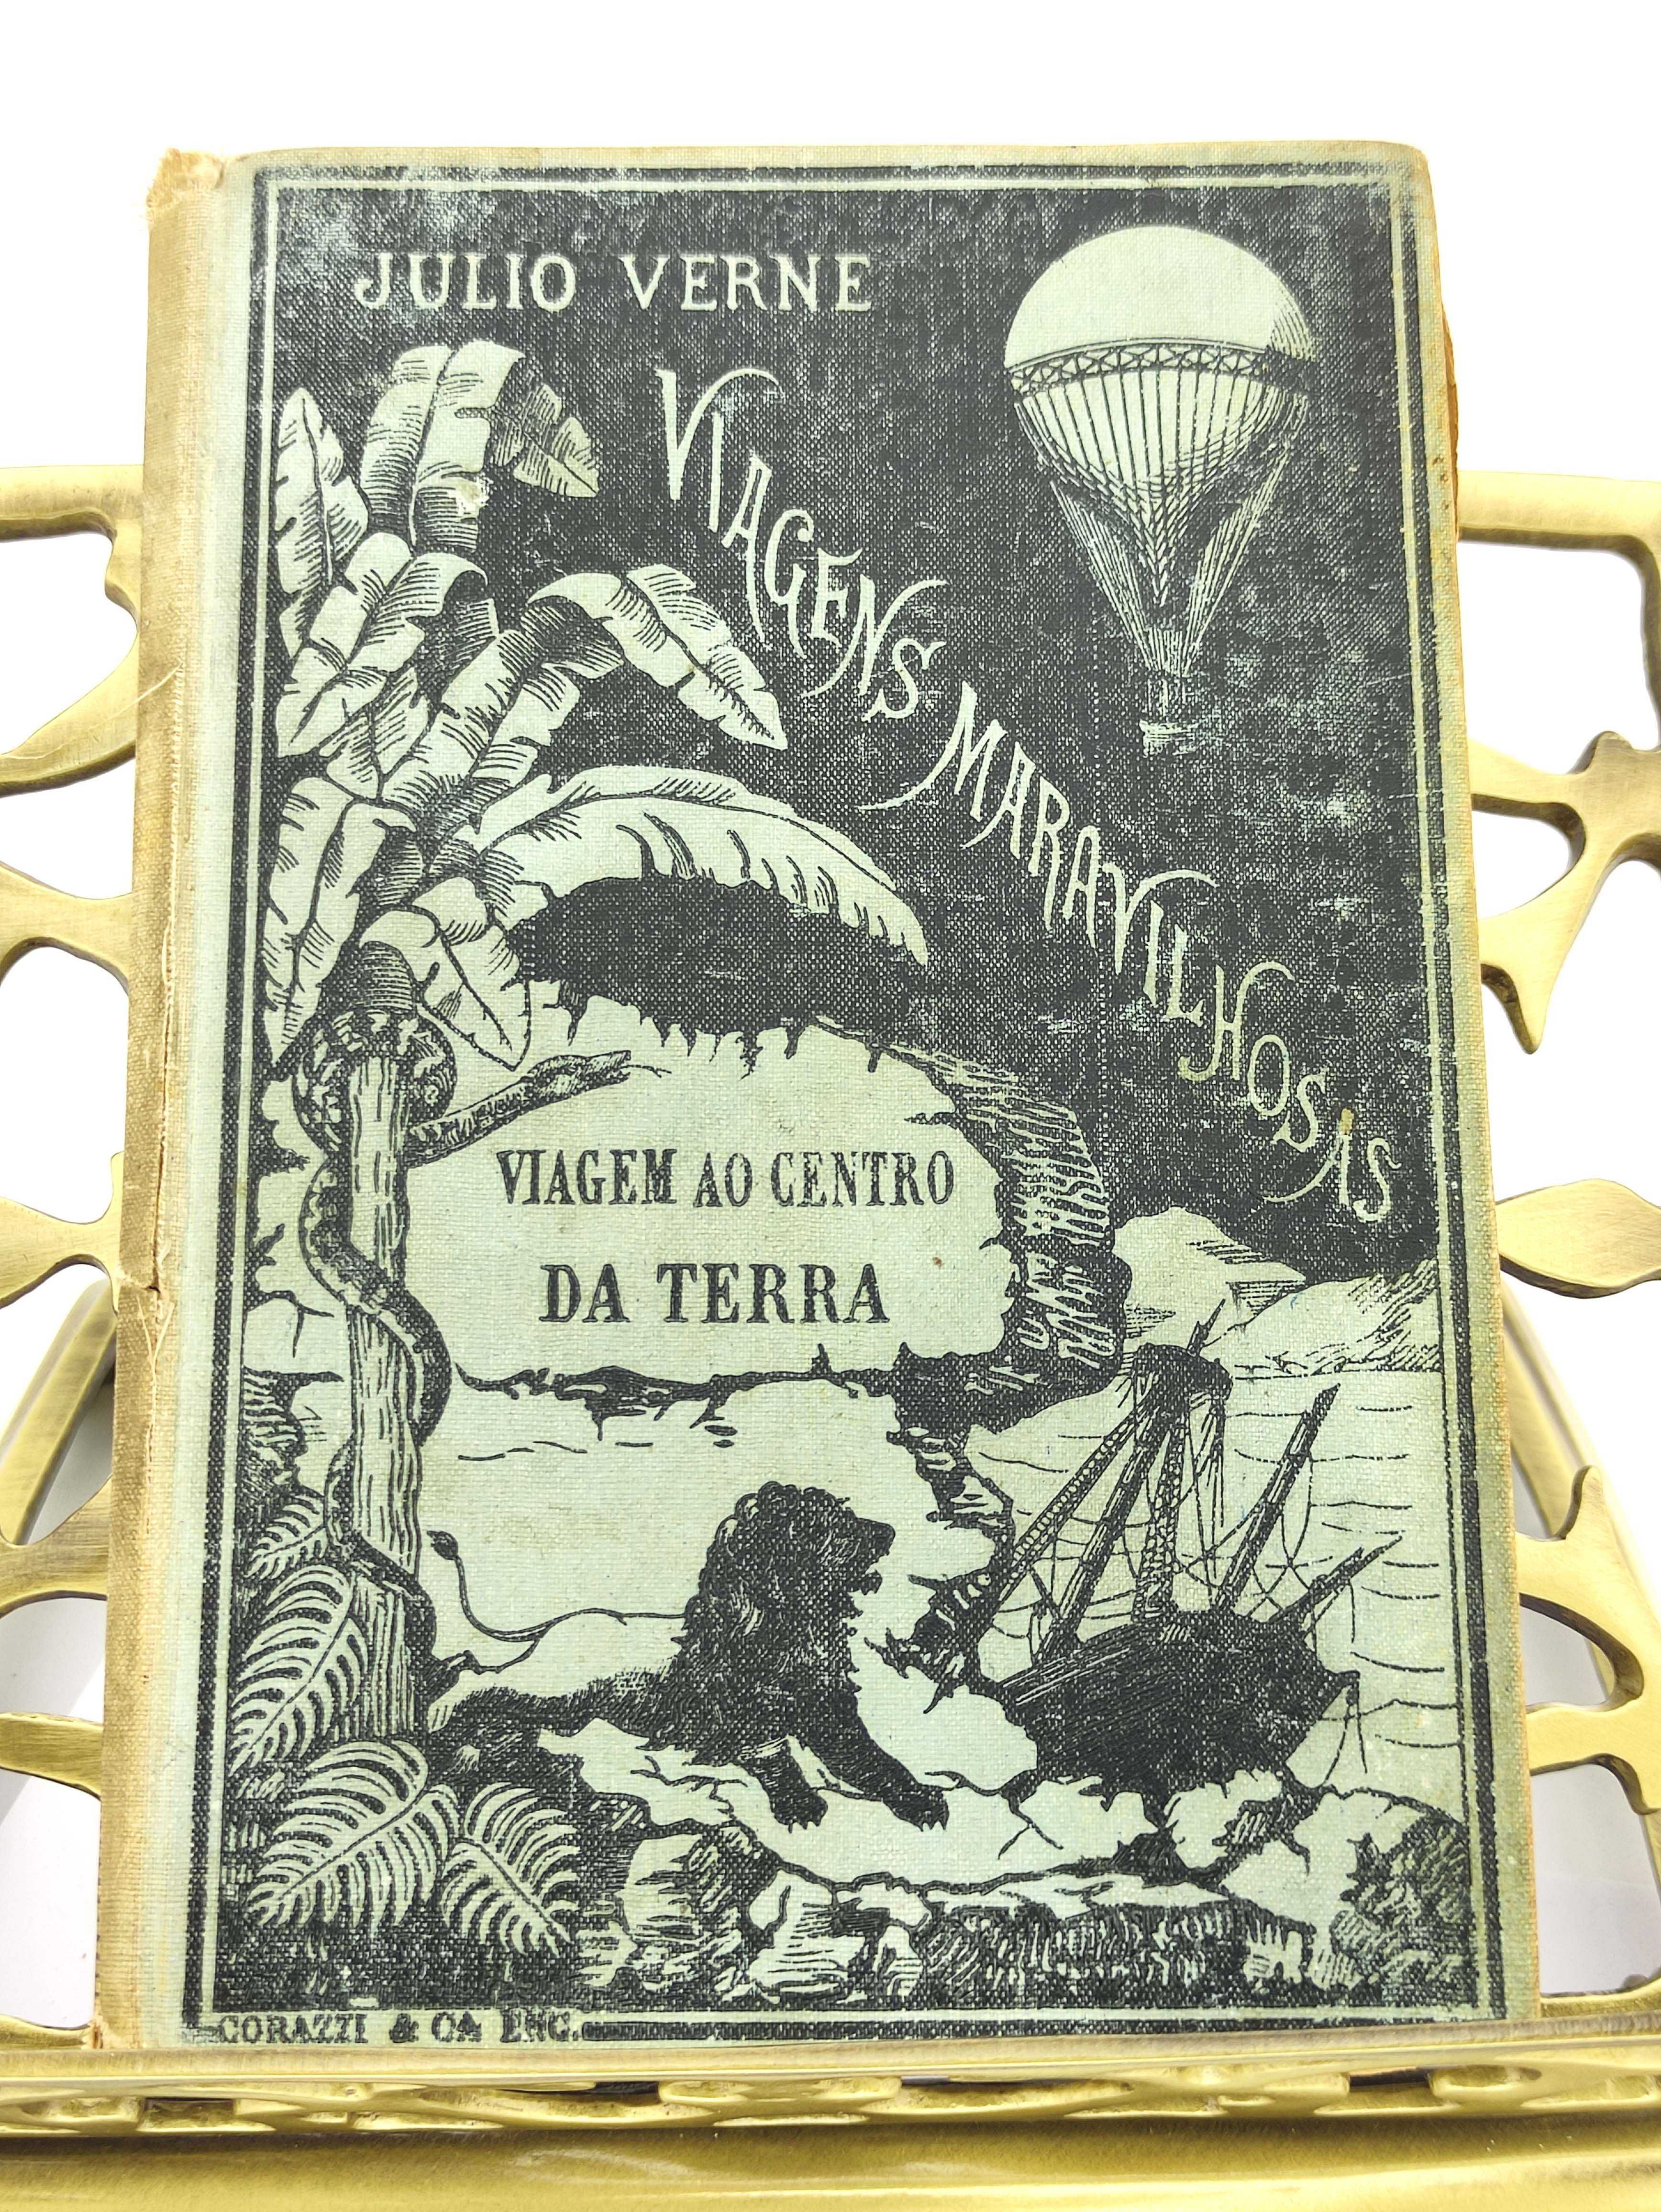 Livro "Viagem ao Centro da Terra", de Júlio Verne (1886)